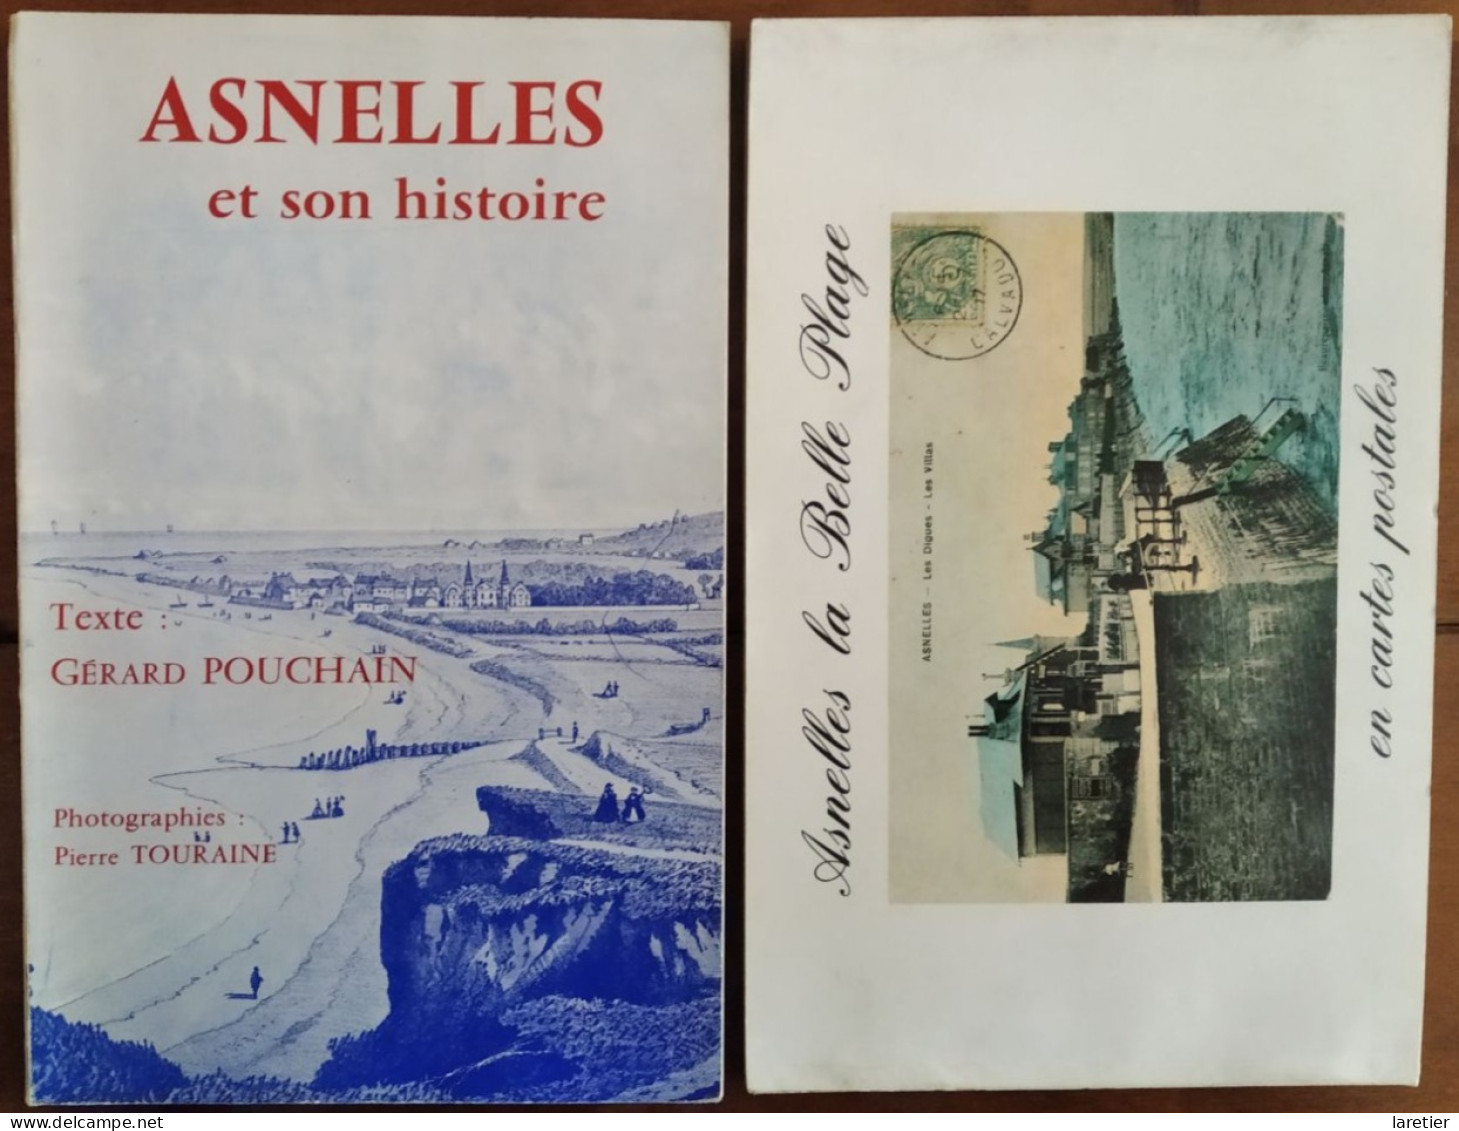 Asnelles la Belle Plage en cartes postales - par Gérard Pouchain - Calvados (14) - Normandie